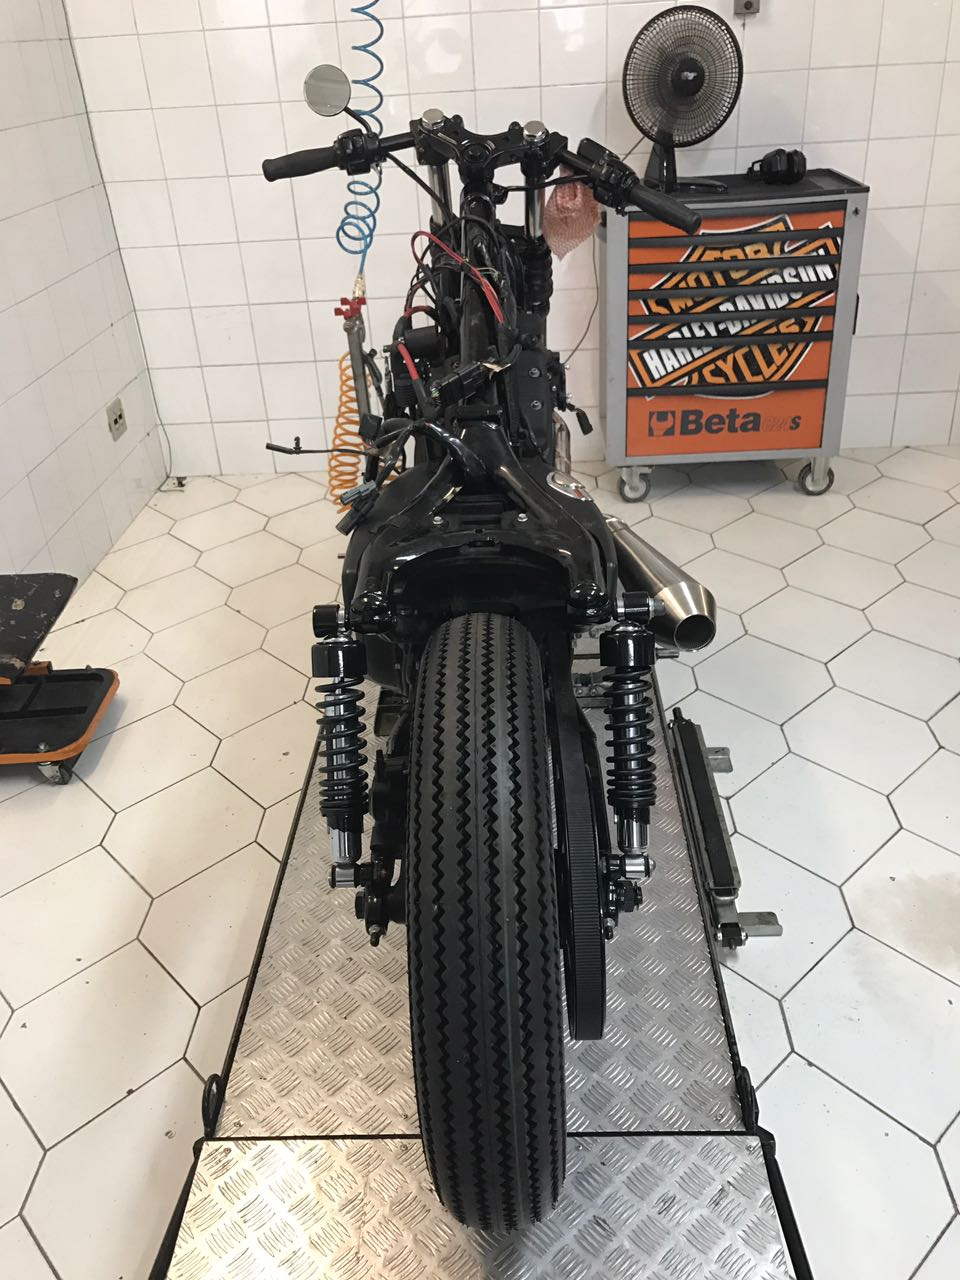 ARQUIVO Topo de bolo Motos Harley Davidson - Topo e corte